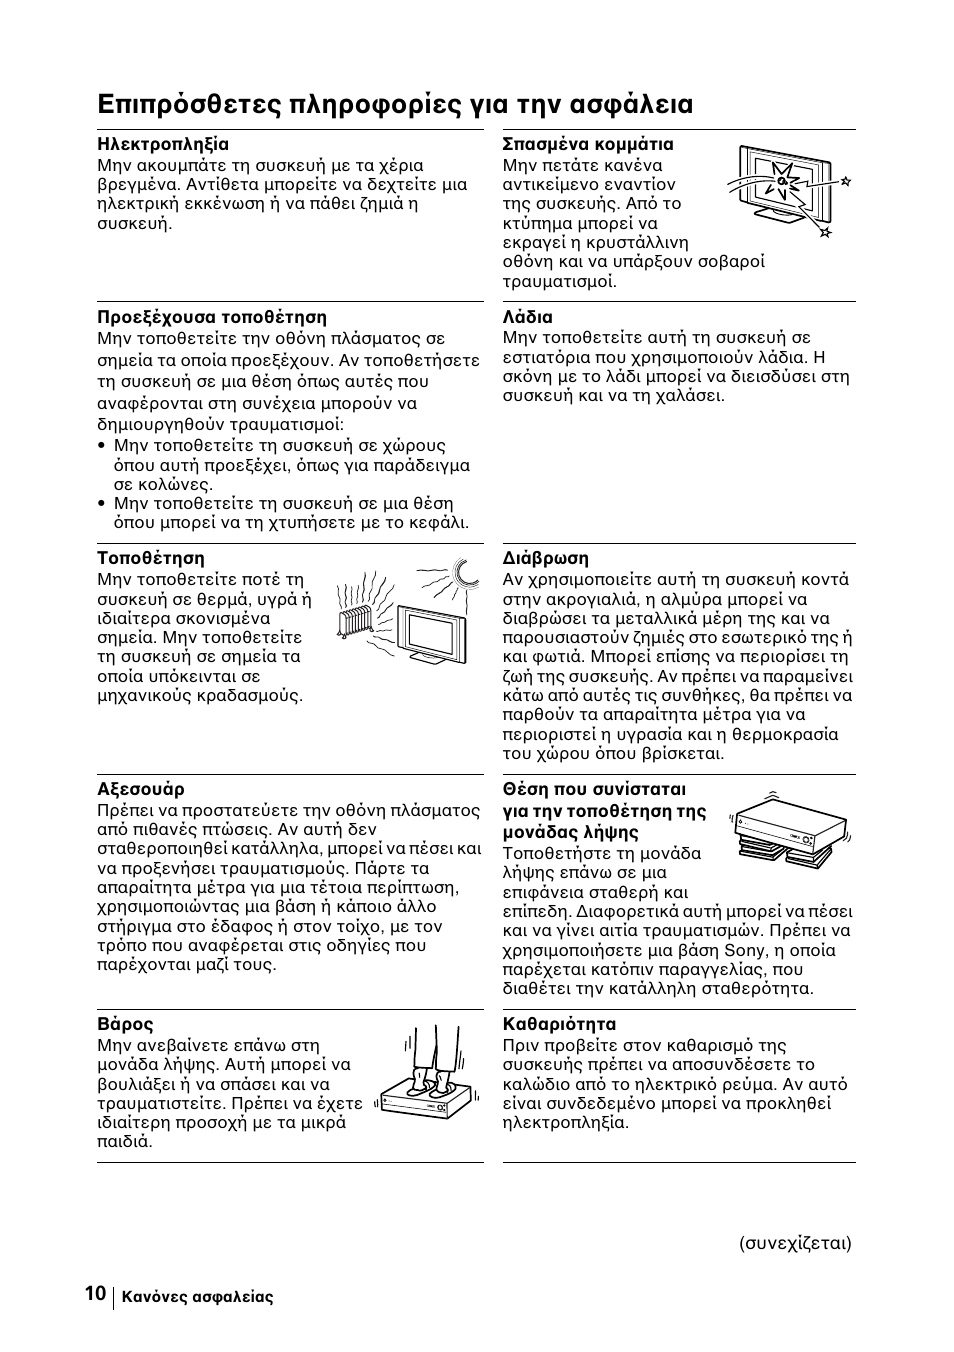 Επιπρ σθετες πληροφορίες για την ασφάλεια | Sony KE-42MR1 Manuale d'uso | Pagina 236 / 302